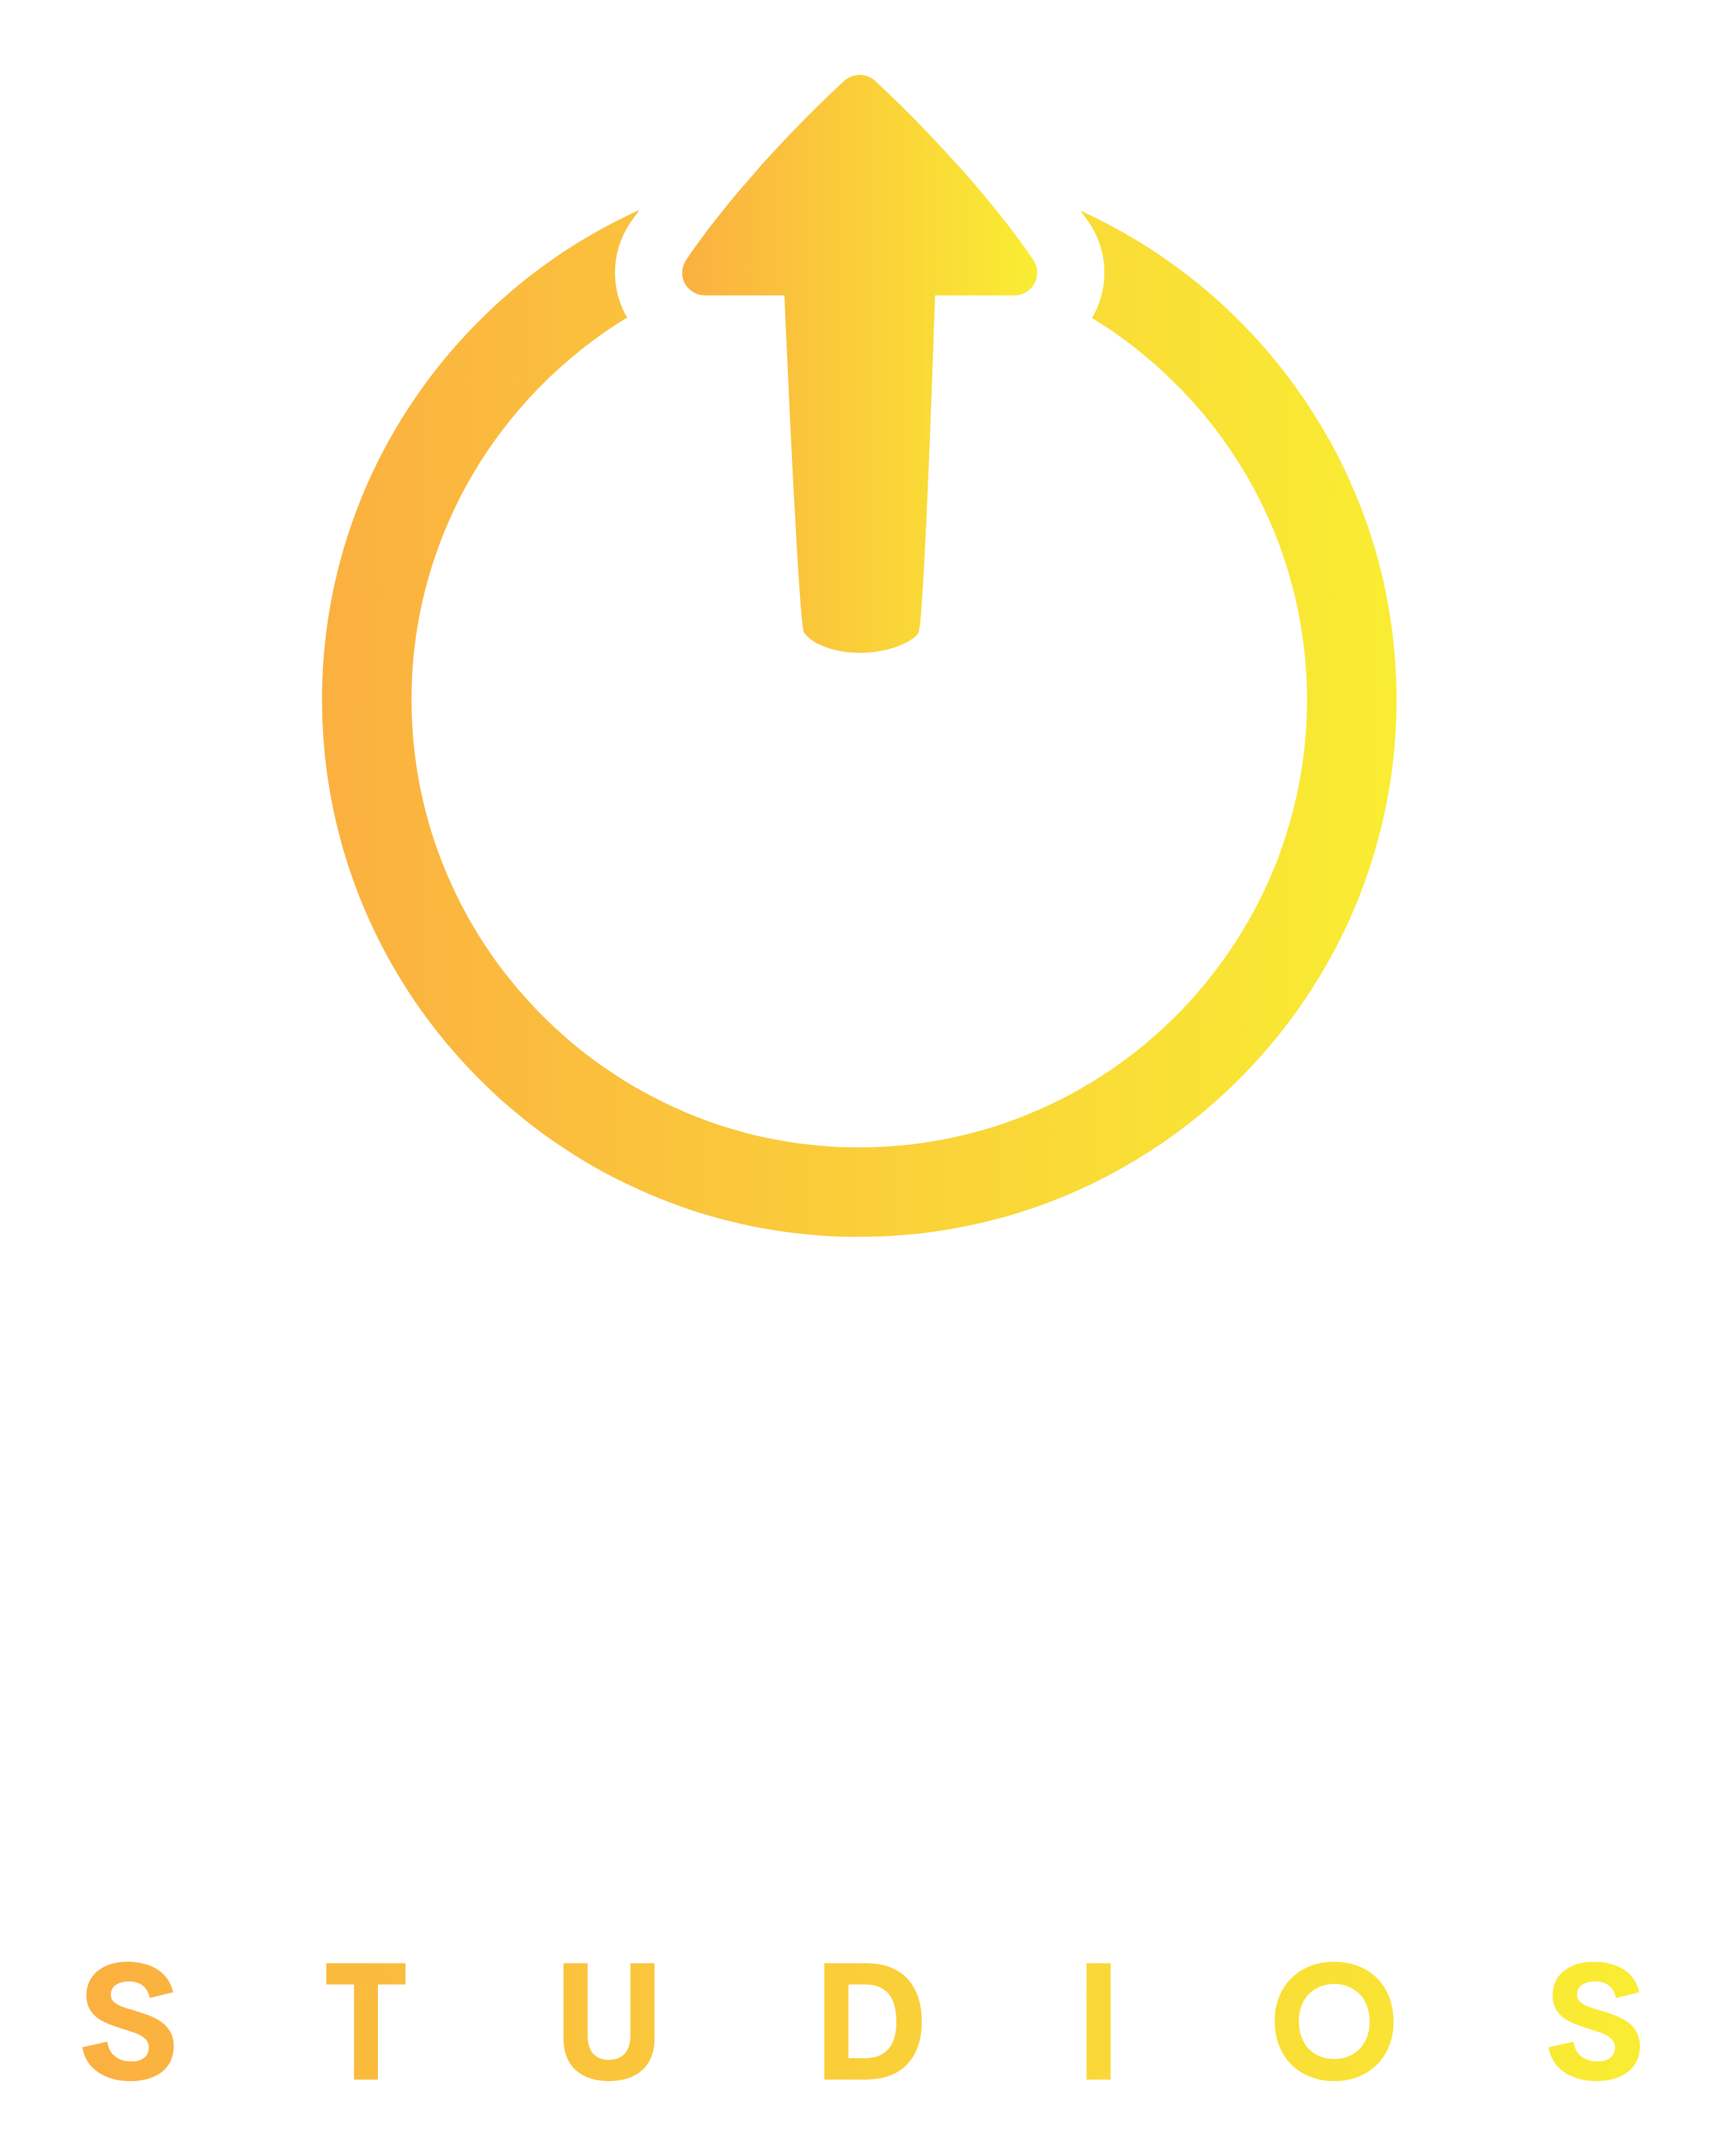 Max Level Studios